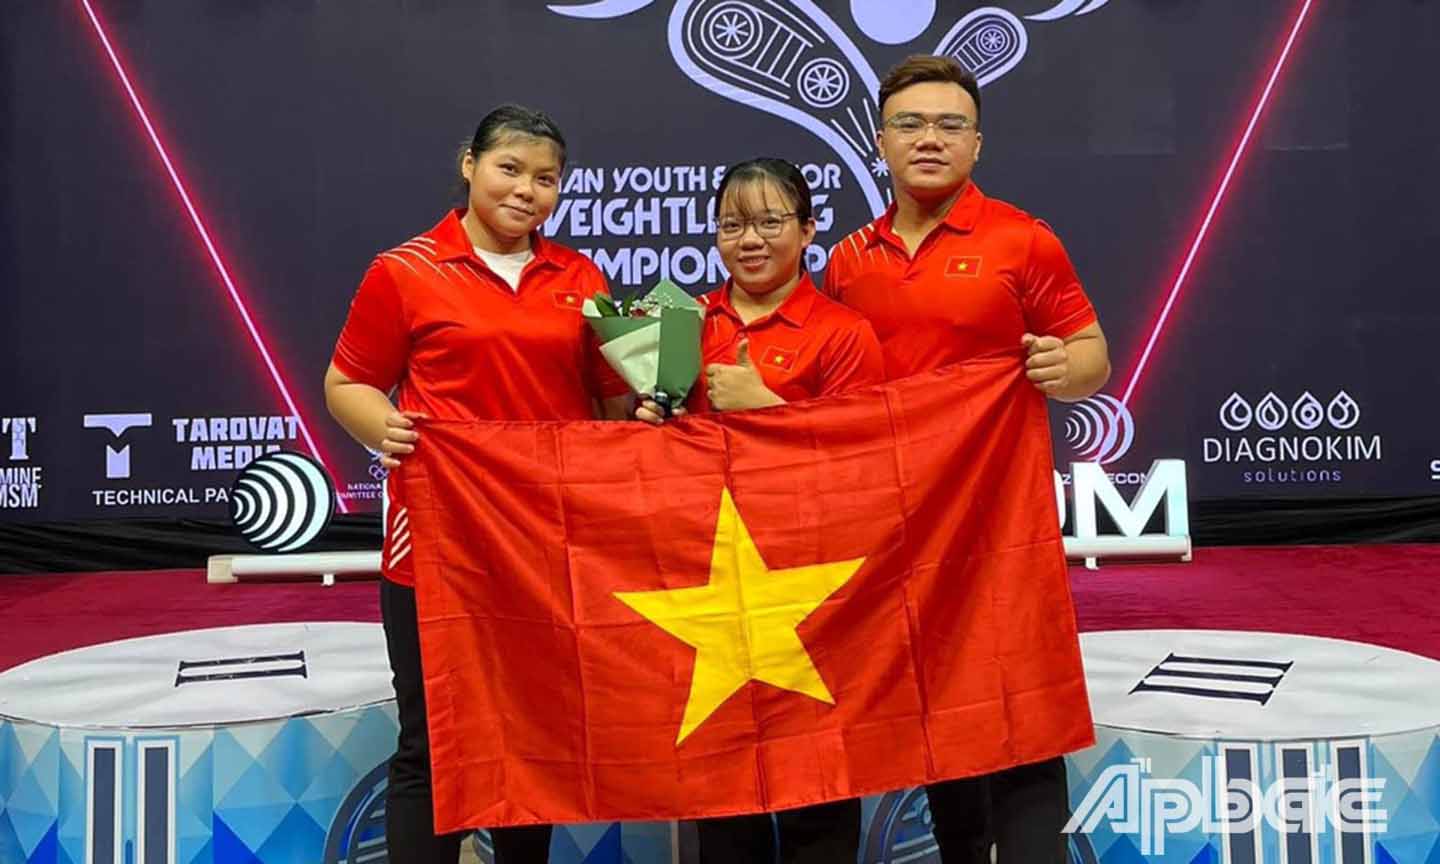 VĐV Hồ Thị Hà Phương (bài trái) chụp ảnh cùng các VĐV đồng hương Tiền Giang trong màu áo Đội tuyển Việt Nam tham dự giải đấu.